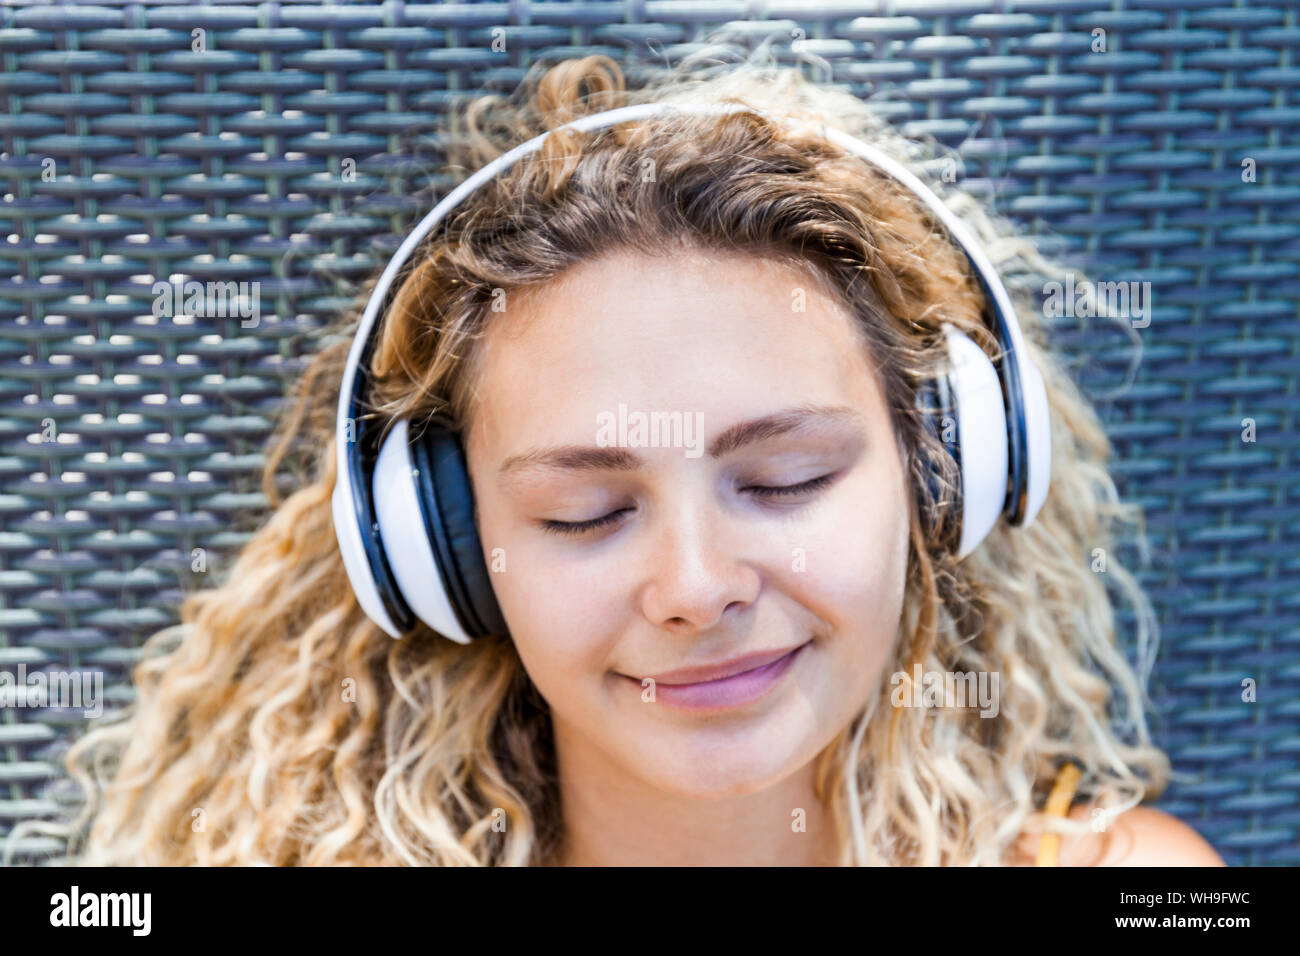 Mujer sonriente al escuchar música con los ojos cerrados, tumbado en la tumbona. Foto de stock